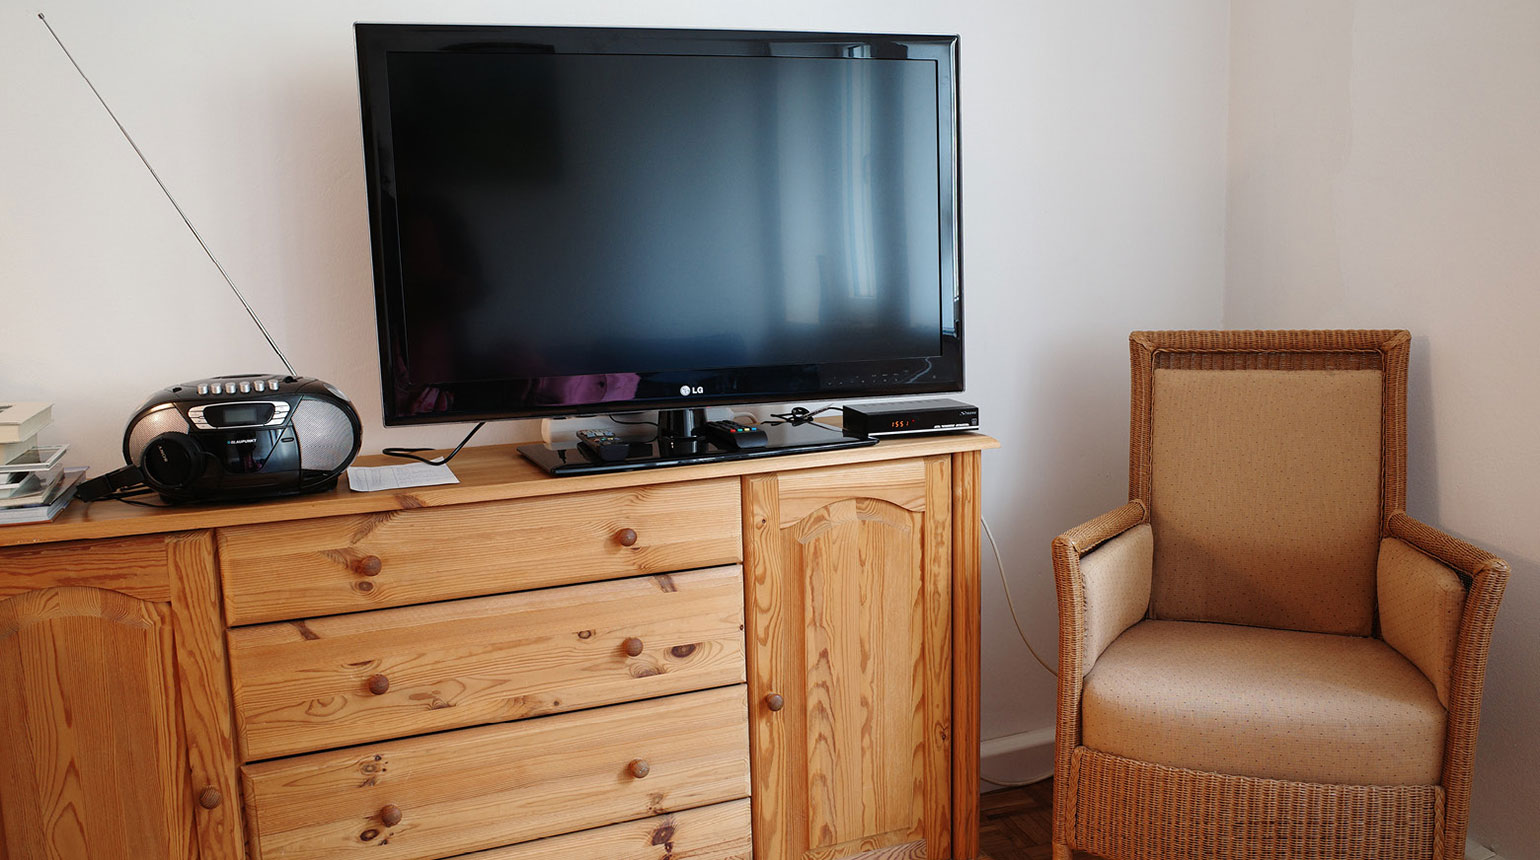 Detailaufnahme in einem Wohnraum: eine Kommode mit Fernseher und Radio, daneben ein Sessel. 